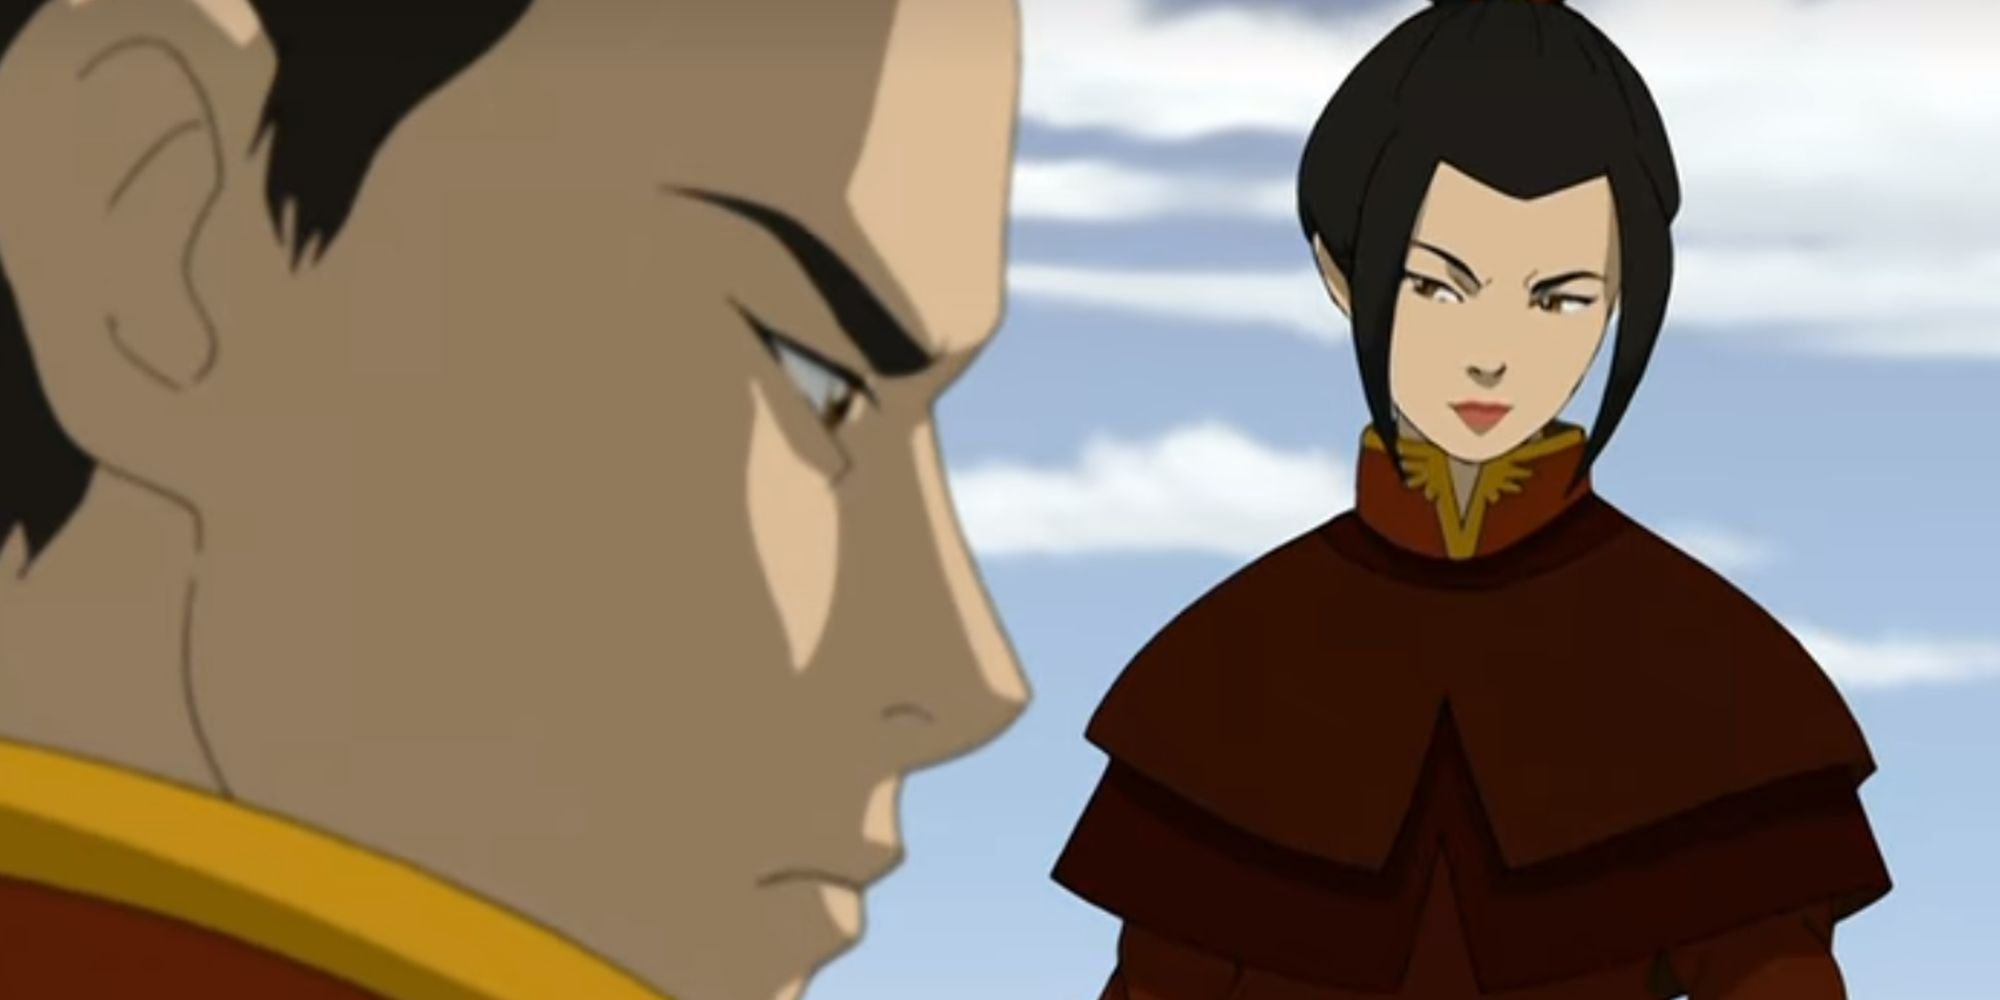 “Pensé mucho en esto”: Por qué Azula renuncia al crédito por matar a Aang, explicado por el director de ATLA